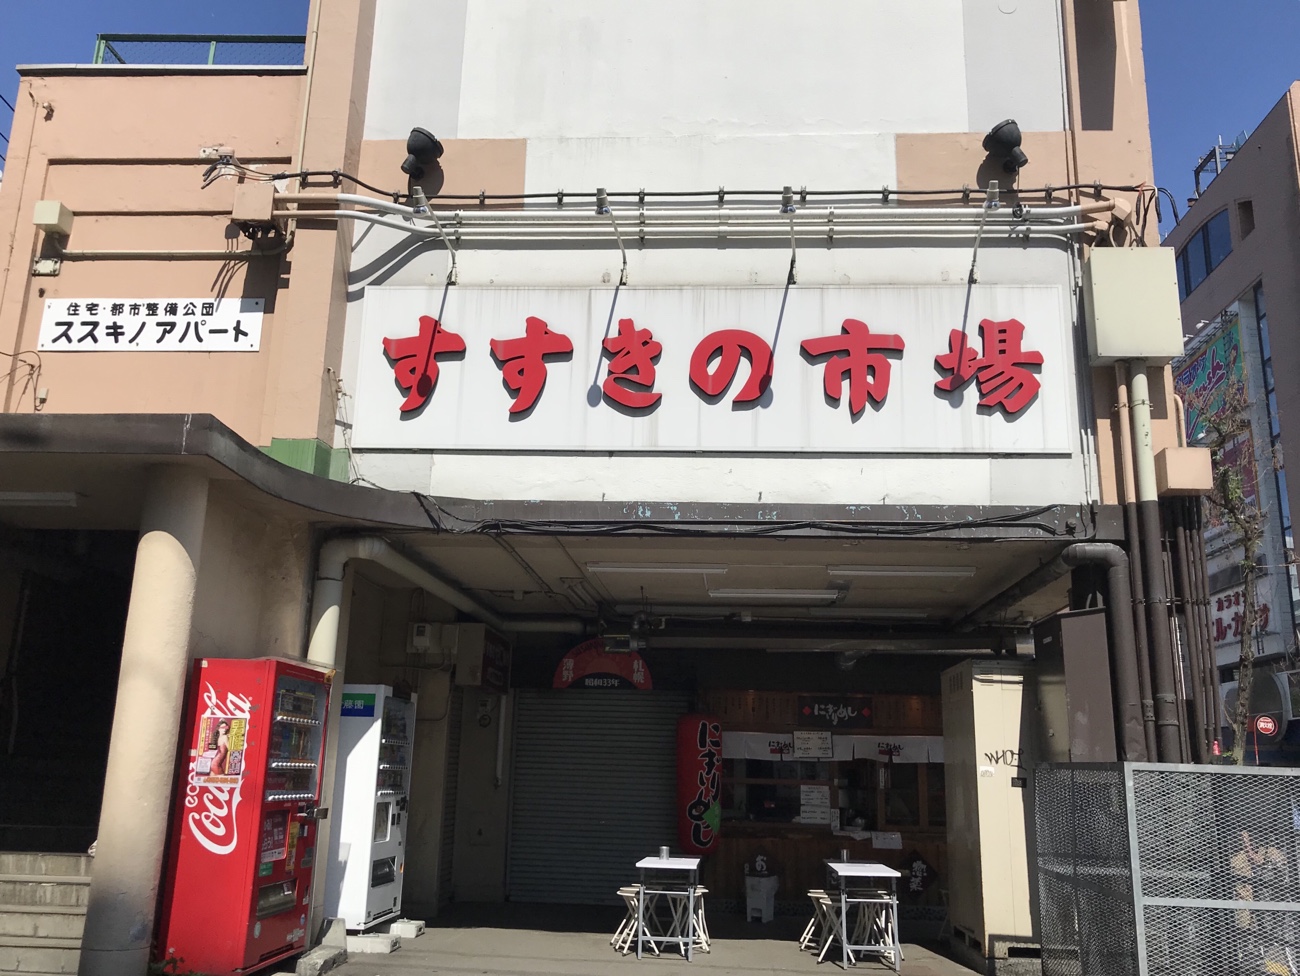 名代にぎりめし 昭和から時間が止まった札幌すすきの市場にある24時間営業のおむすび屋 節約プレミアムな旅行ブログ